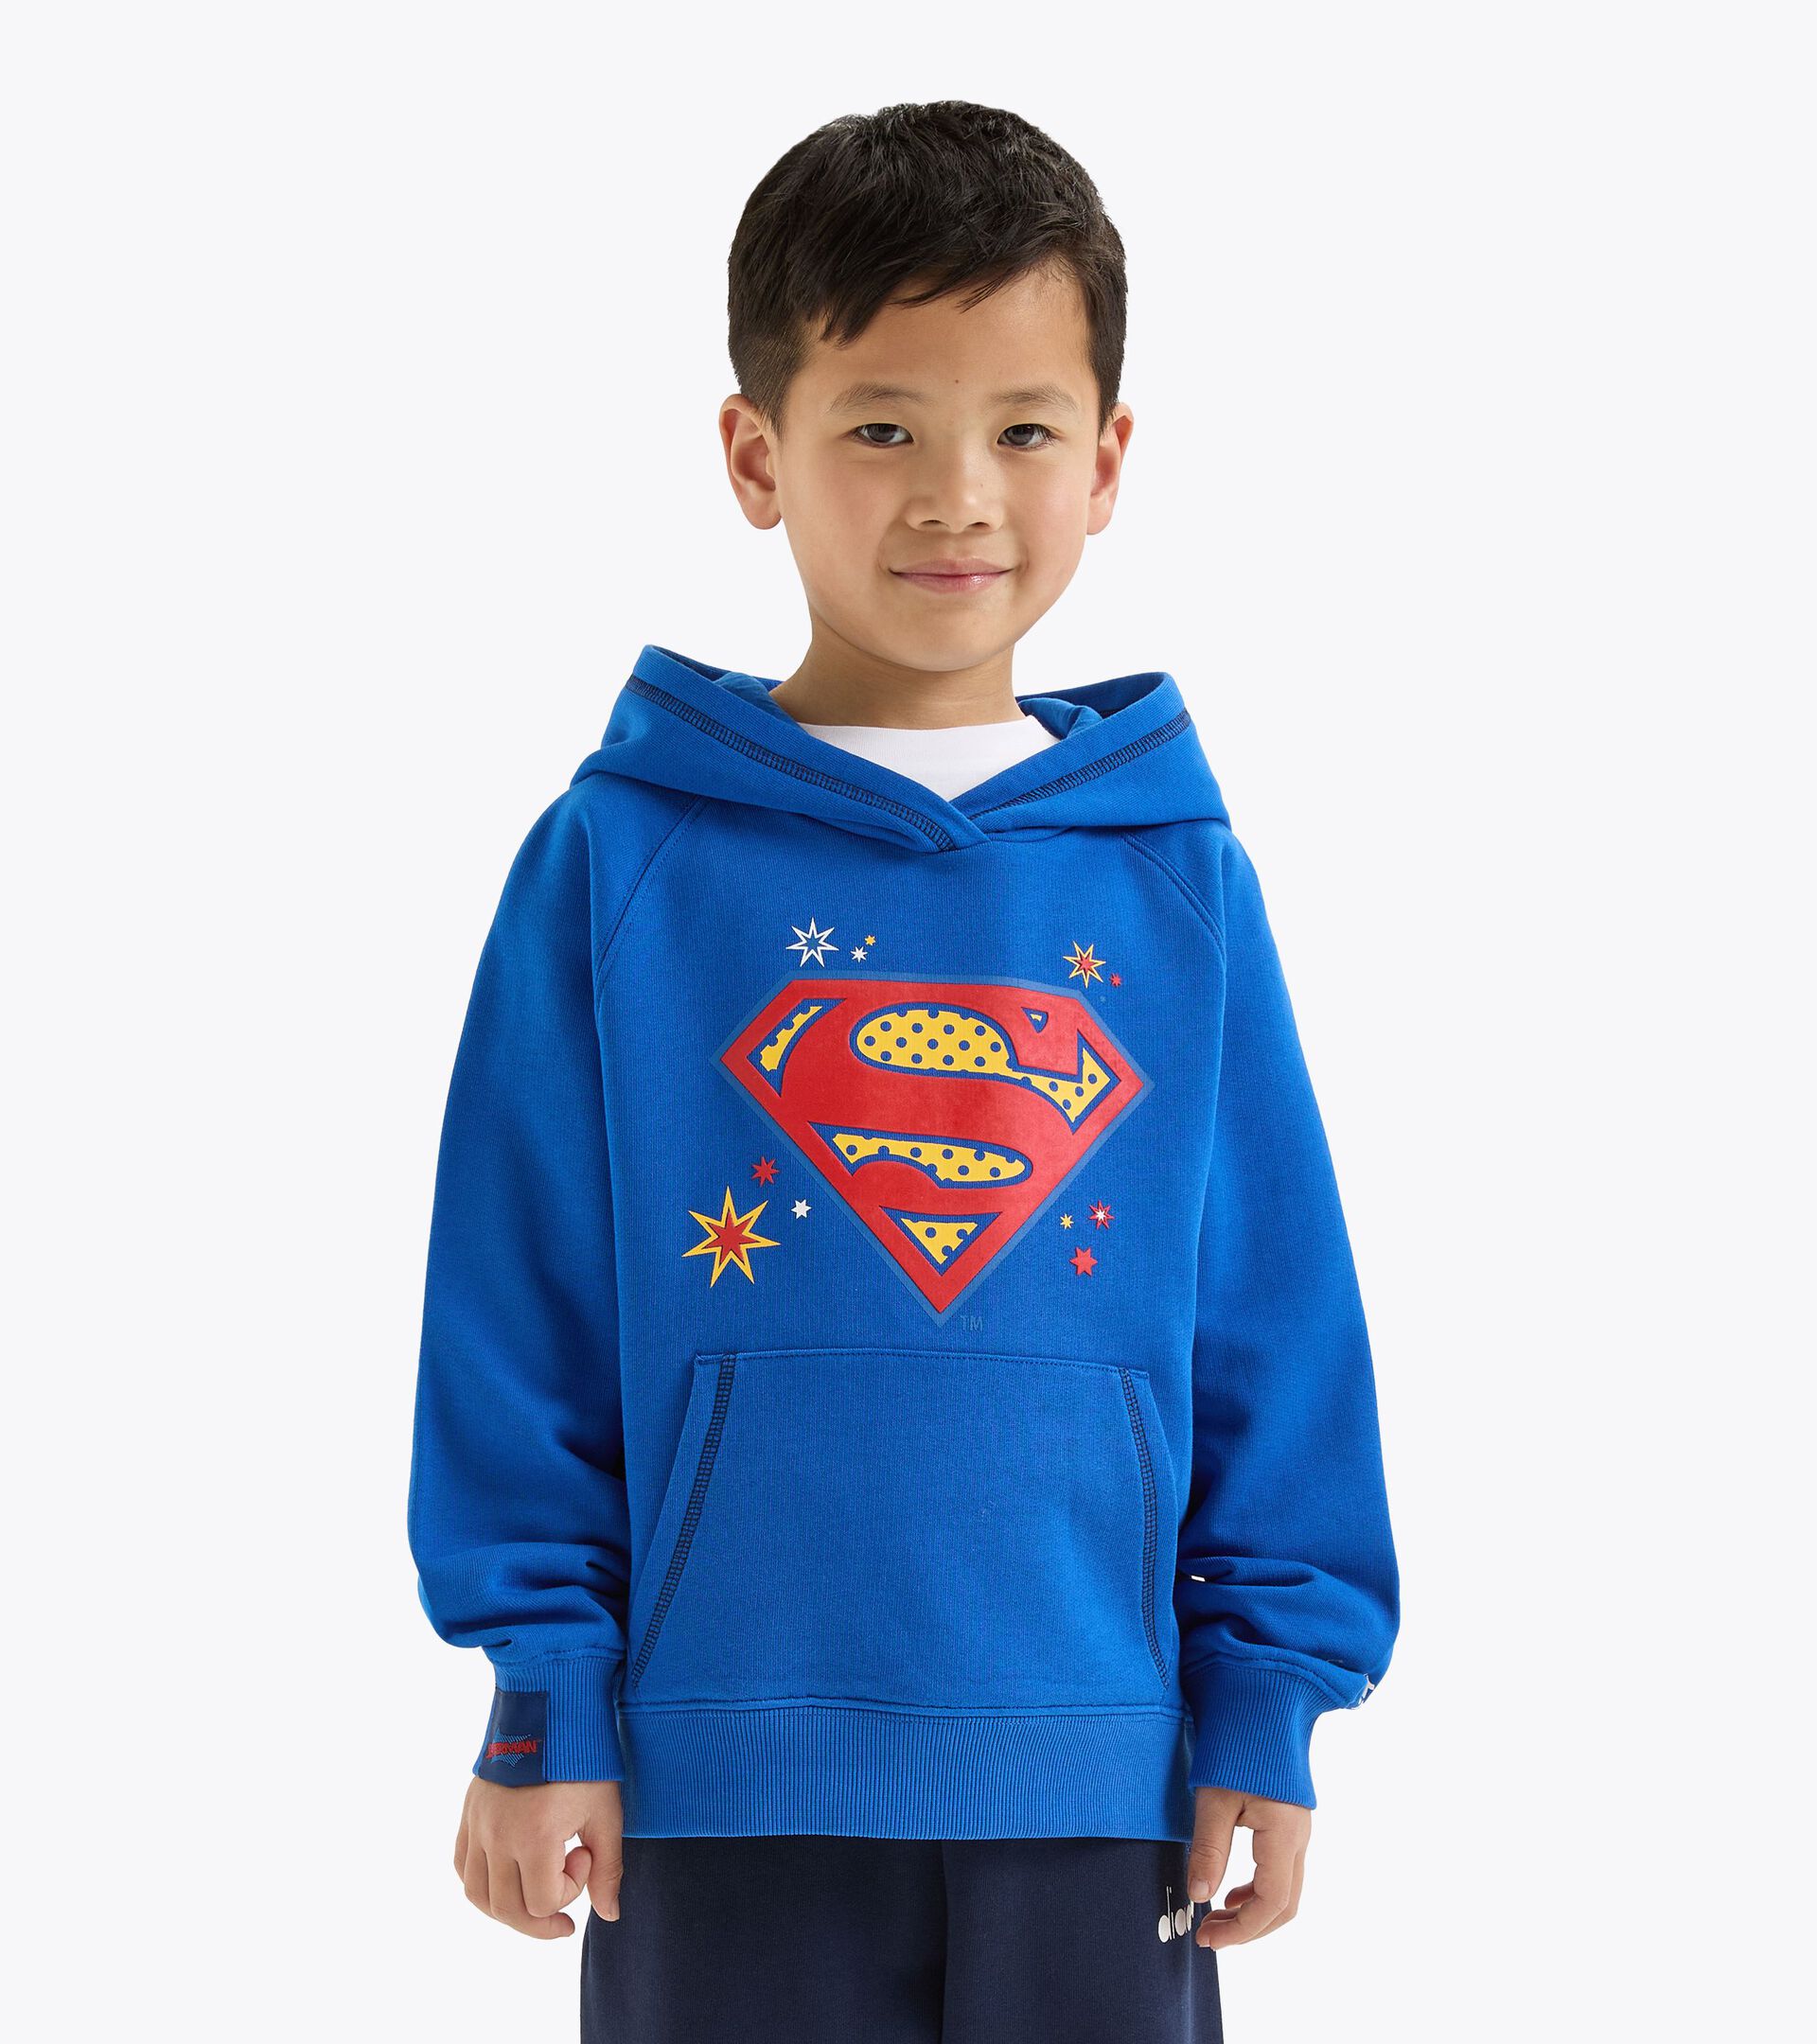 Superhero hoodie - Kids  JU.HOODIE SUPERHEROES PRINCESS BLUE - Diadora